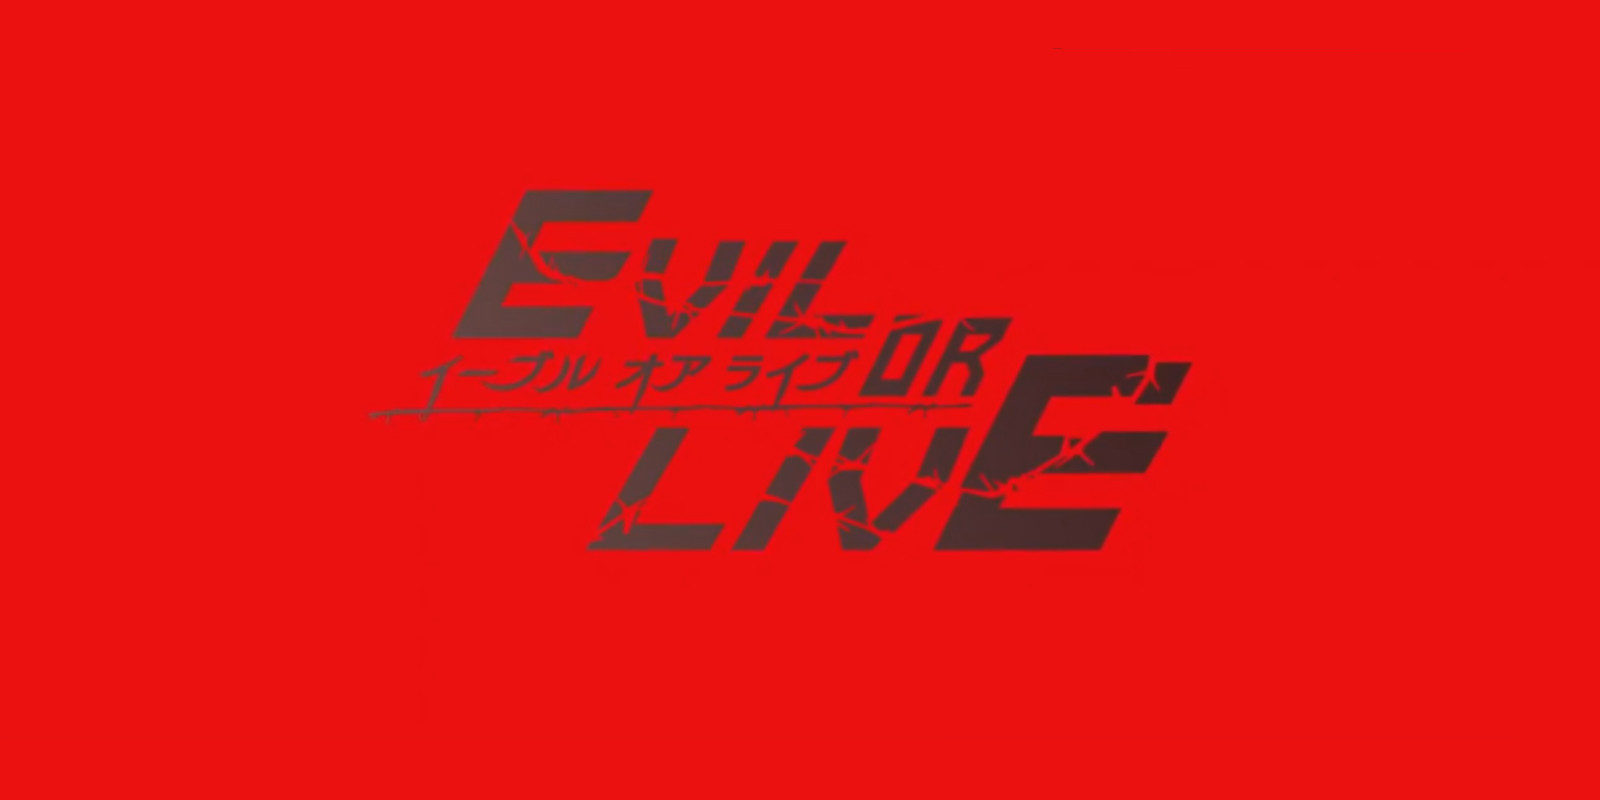 'Evil or Live', lo nuevo del estudio Emon, se estrenará el 10 de octubre